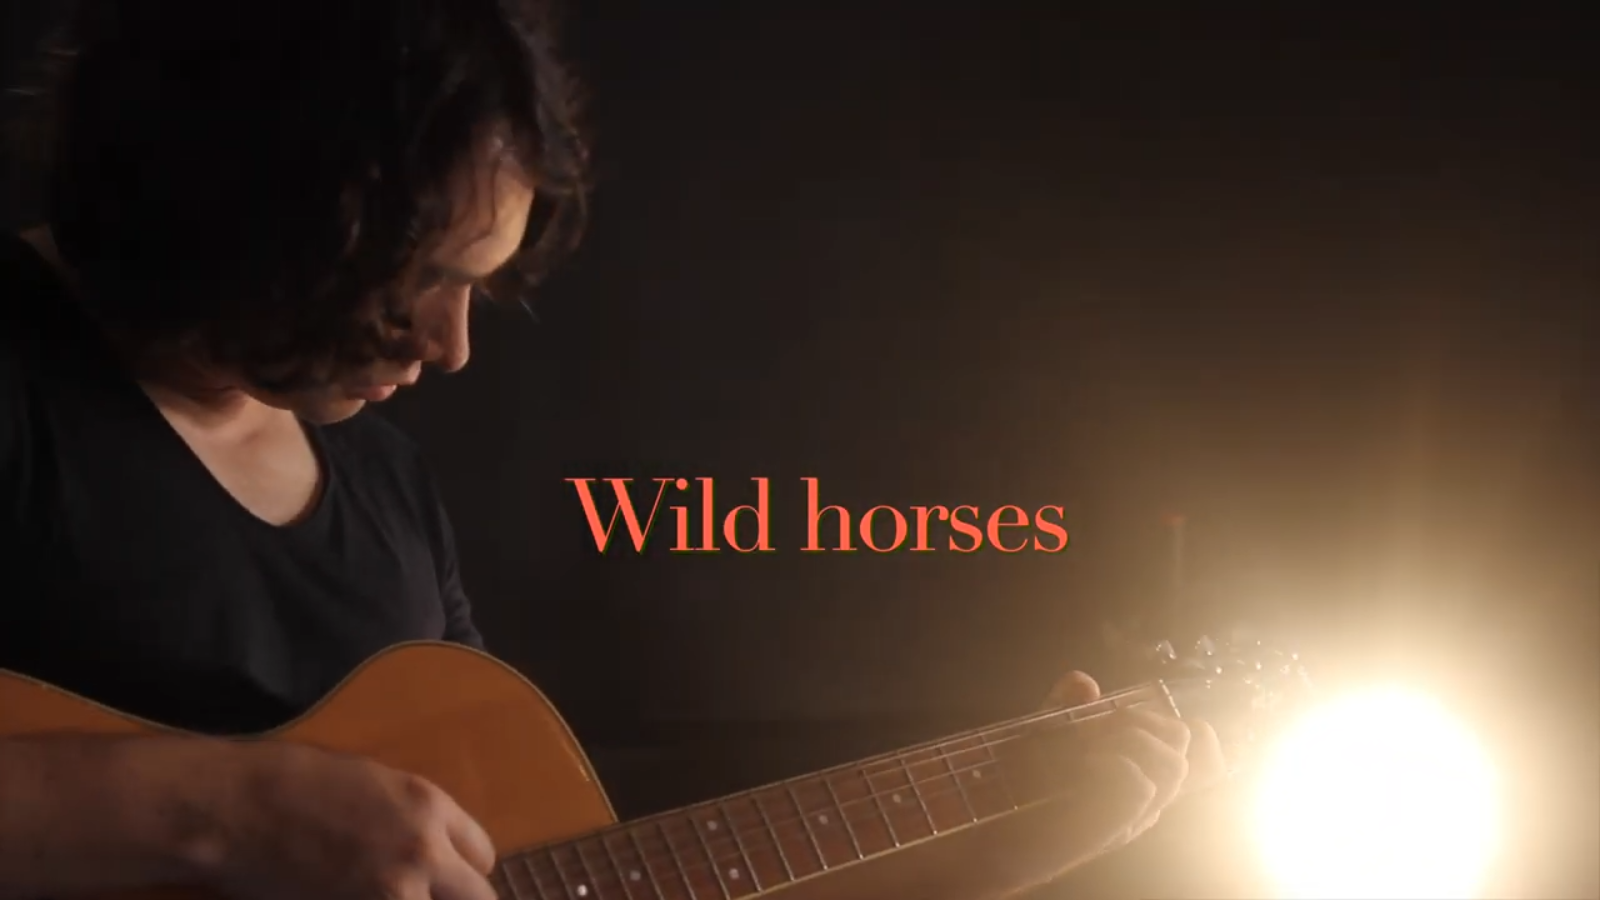 Arcano - Wild horses